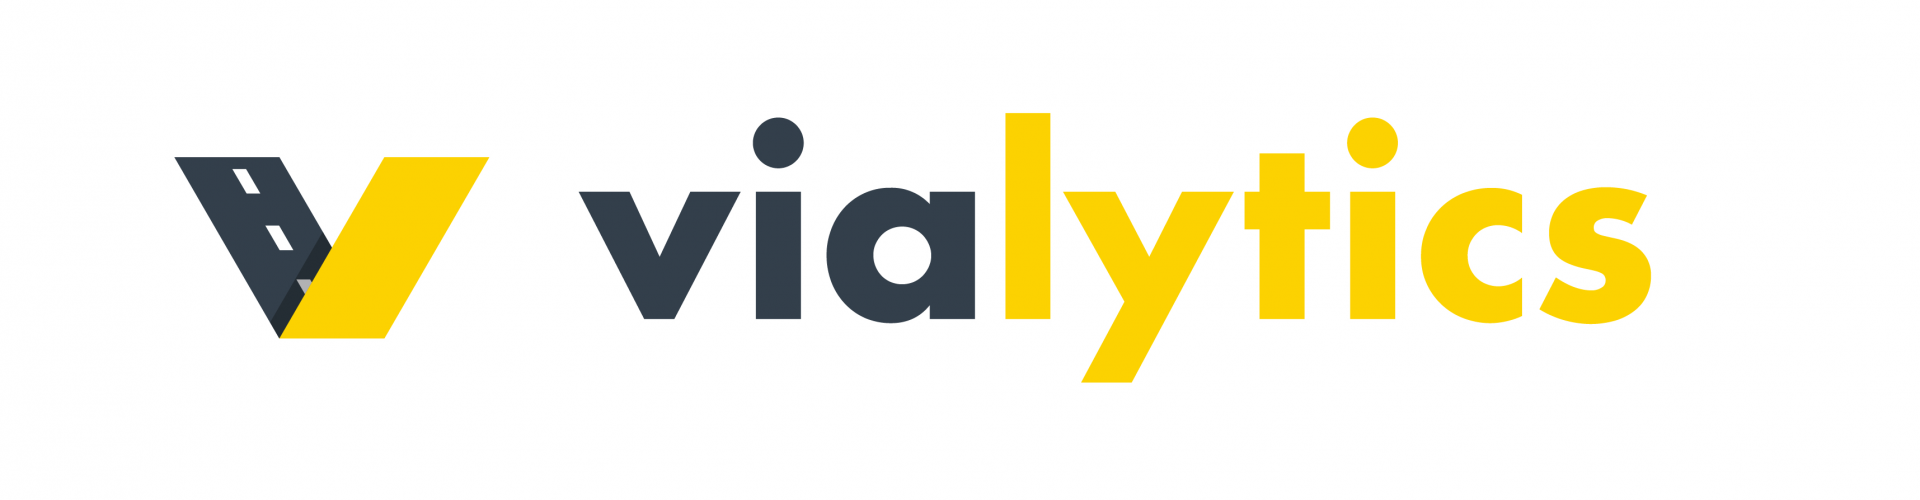 vialytics GmbH